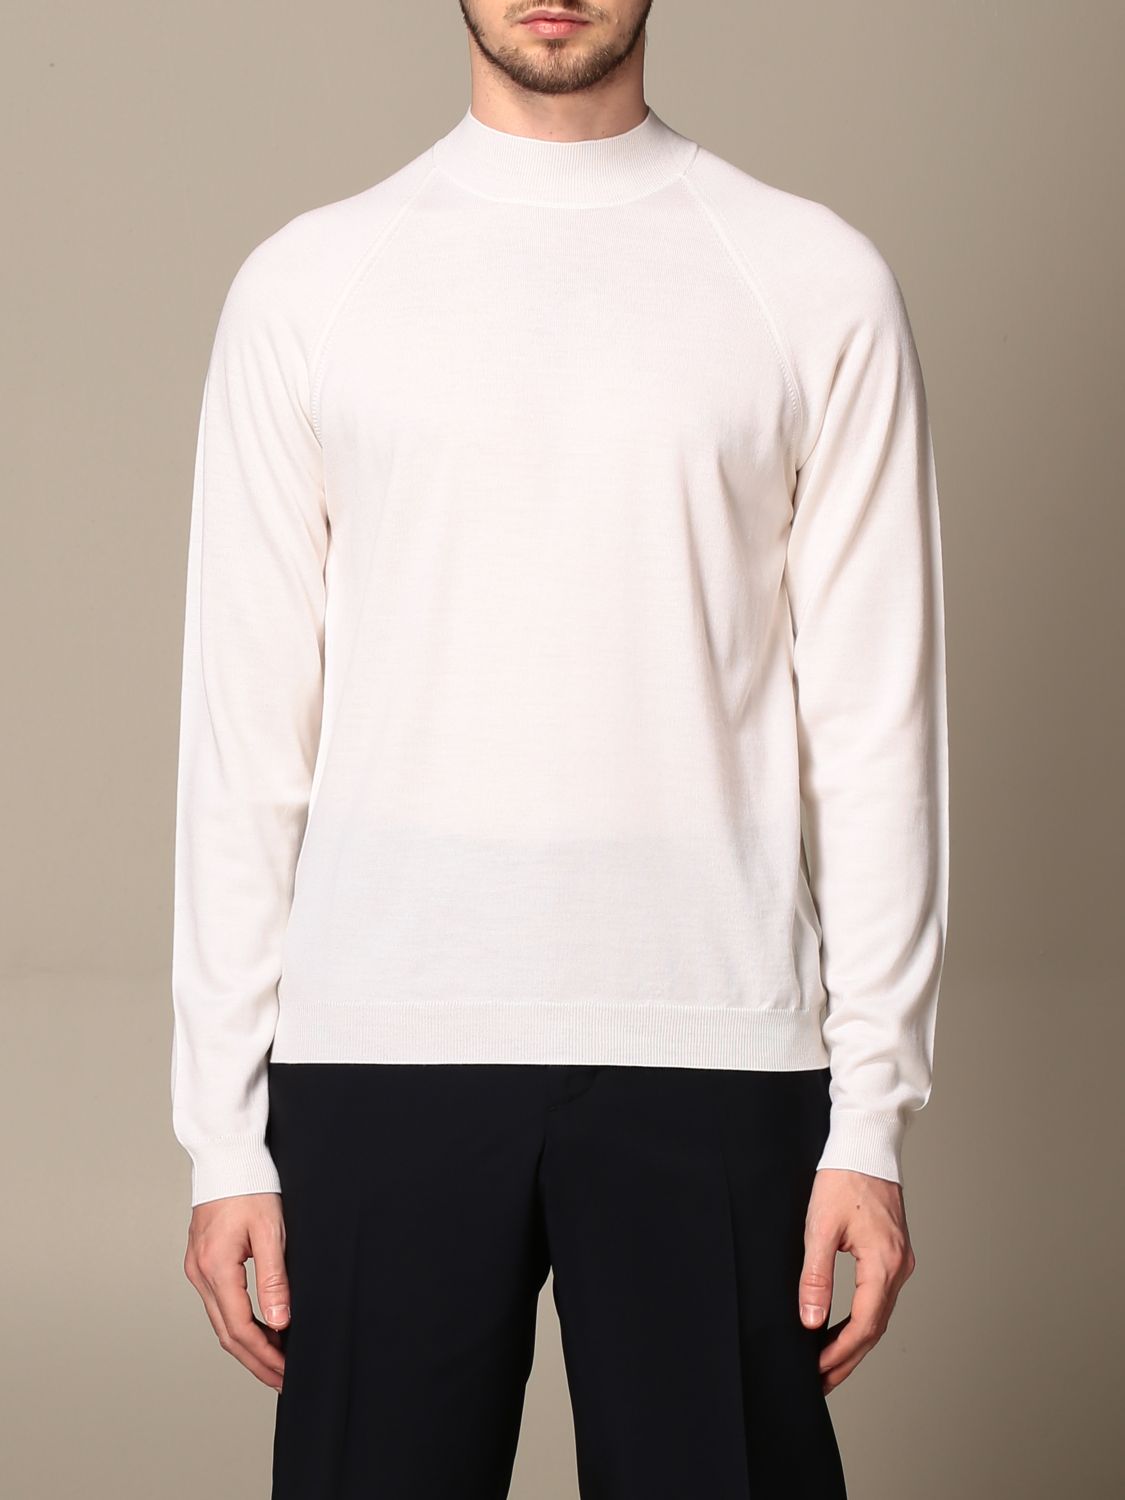 PRADA: basic long-sleeved shirt - White | Sweater Prada UMR34 6J2N ...